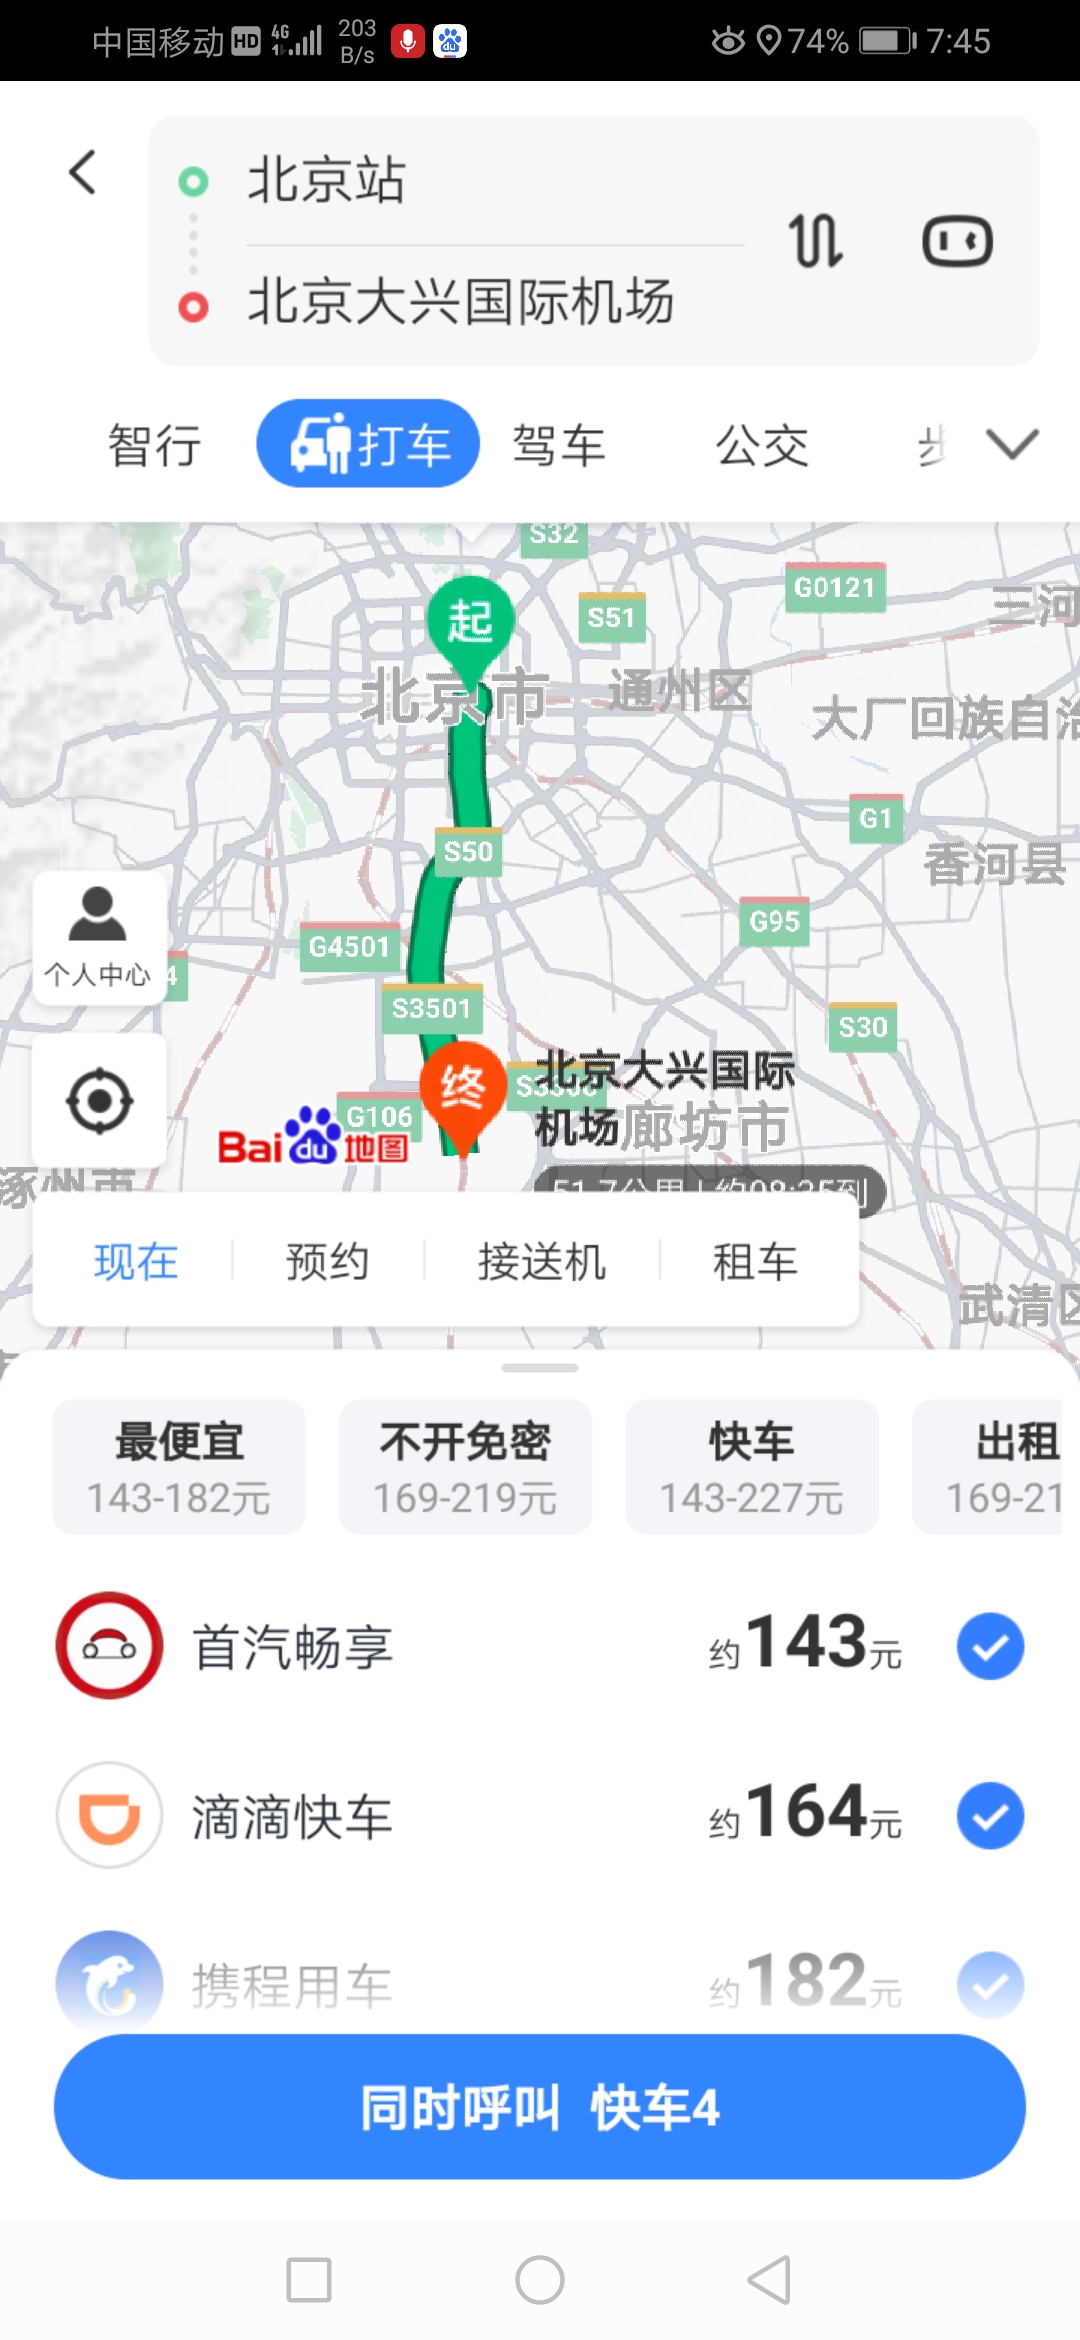 我晚上12点到顺义机场想去大兴机场有地铁吗（晚上11点到北京大兴机场到市区有地铁吗）